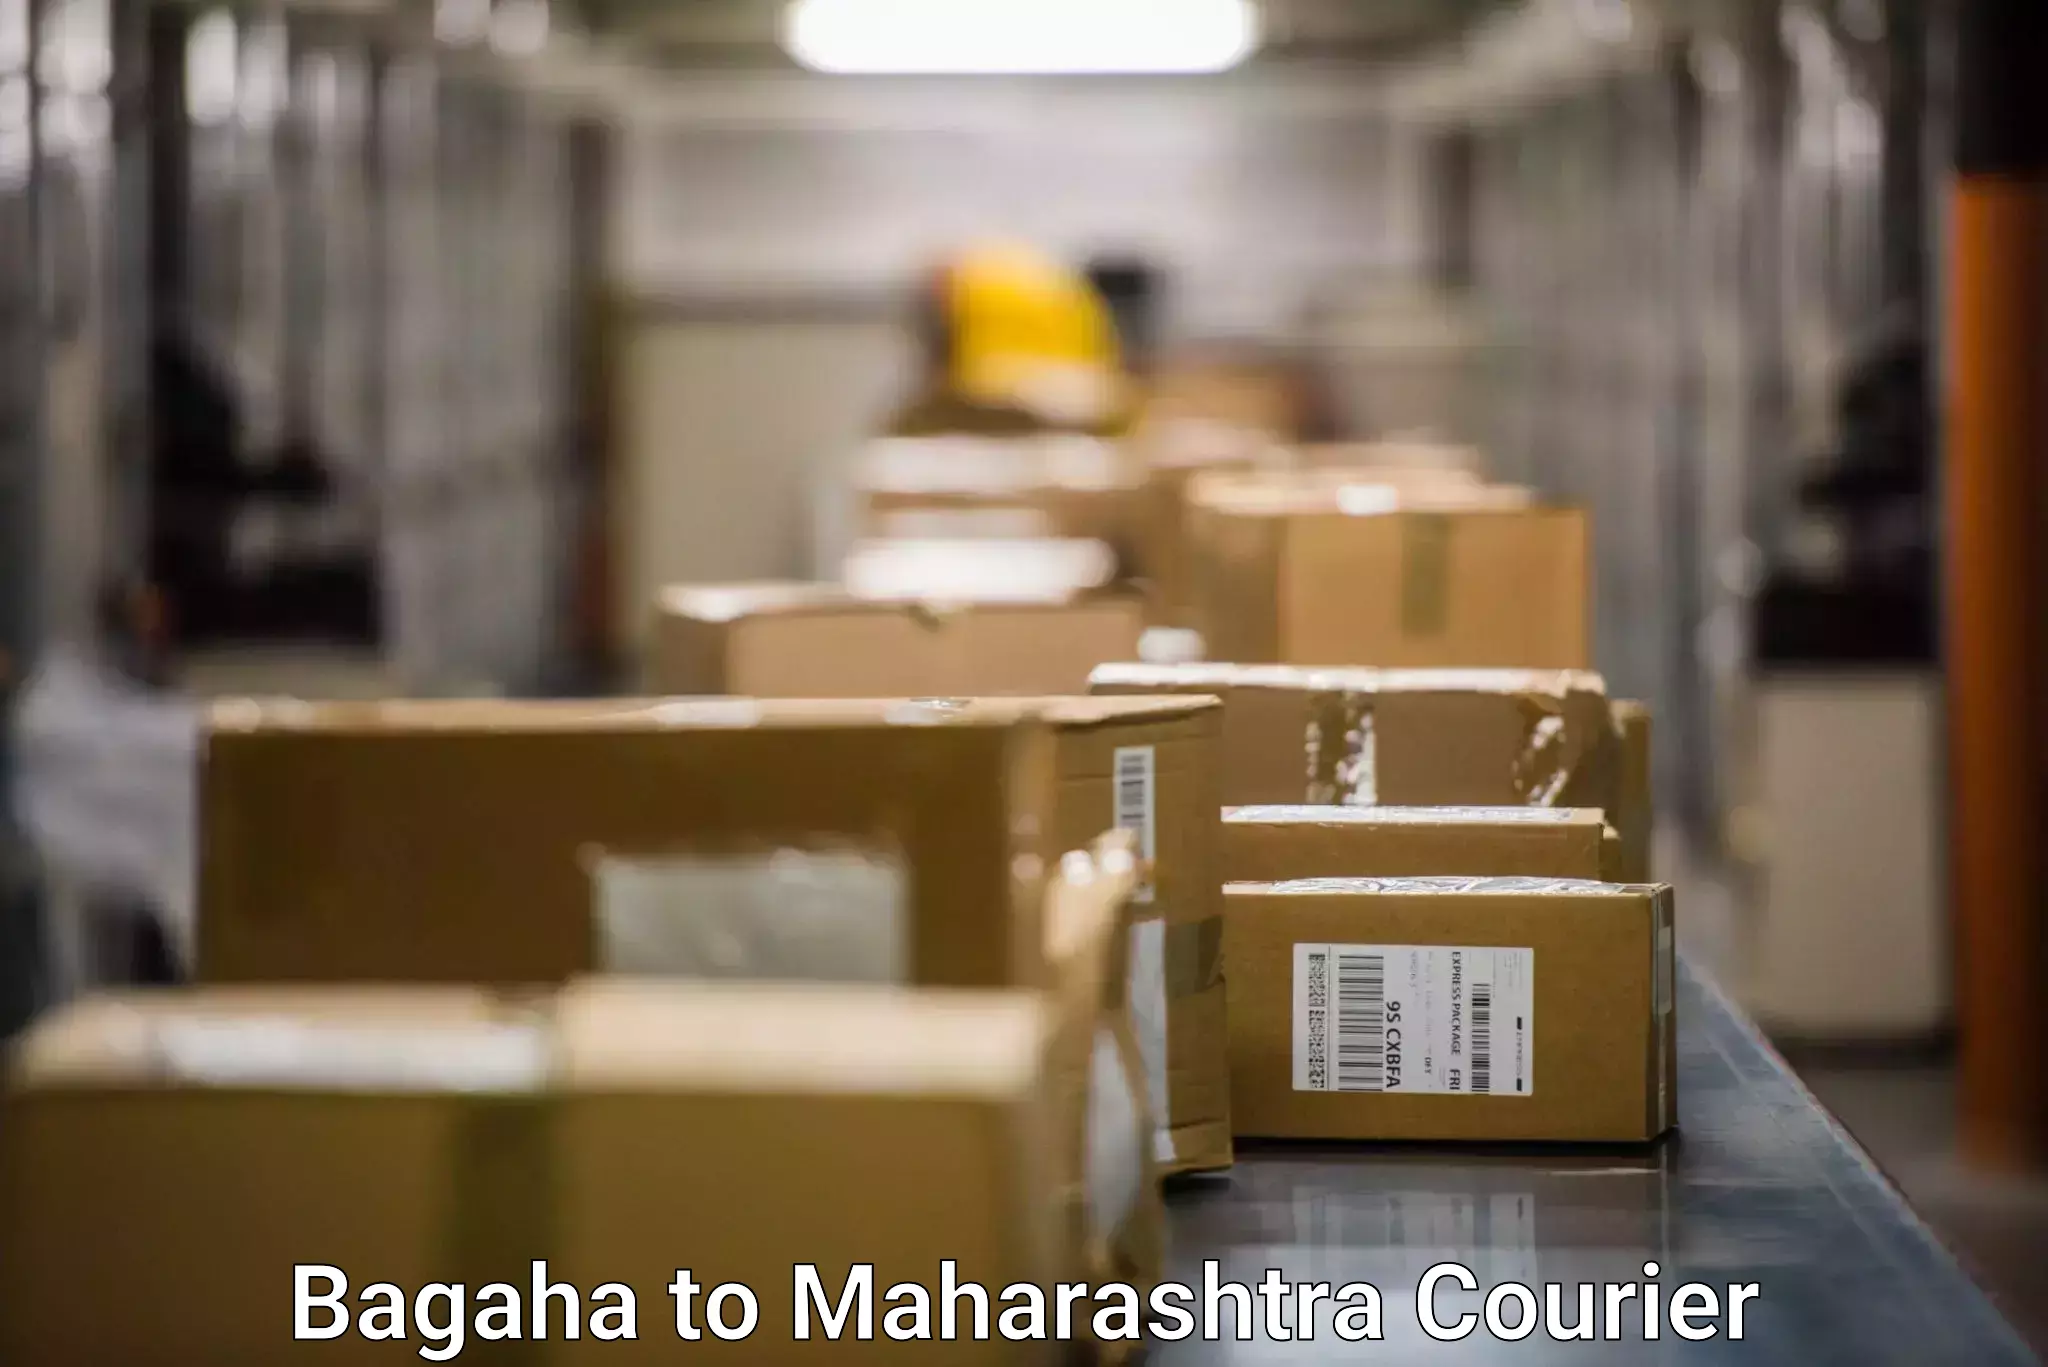 Regular parcel service Bagaha to IIIT Pune